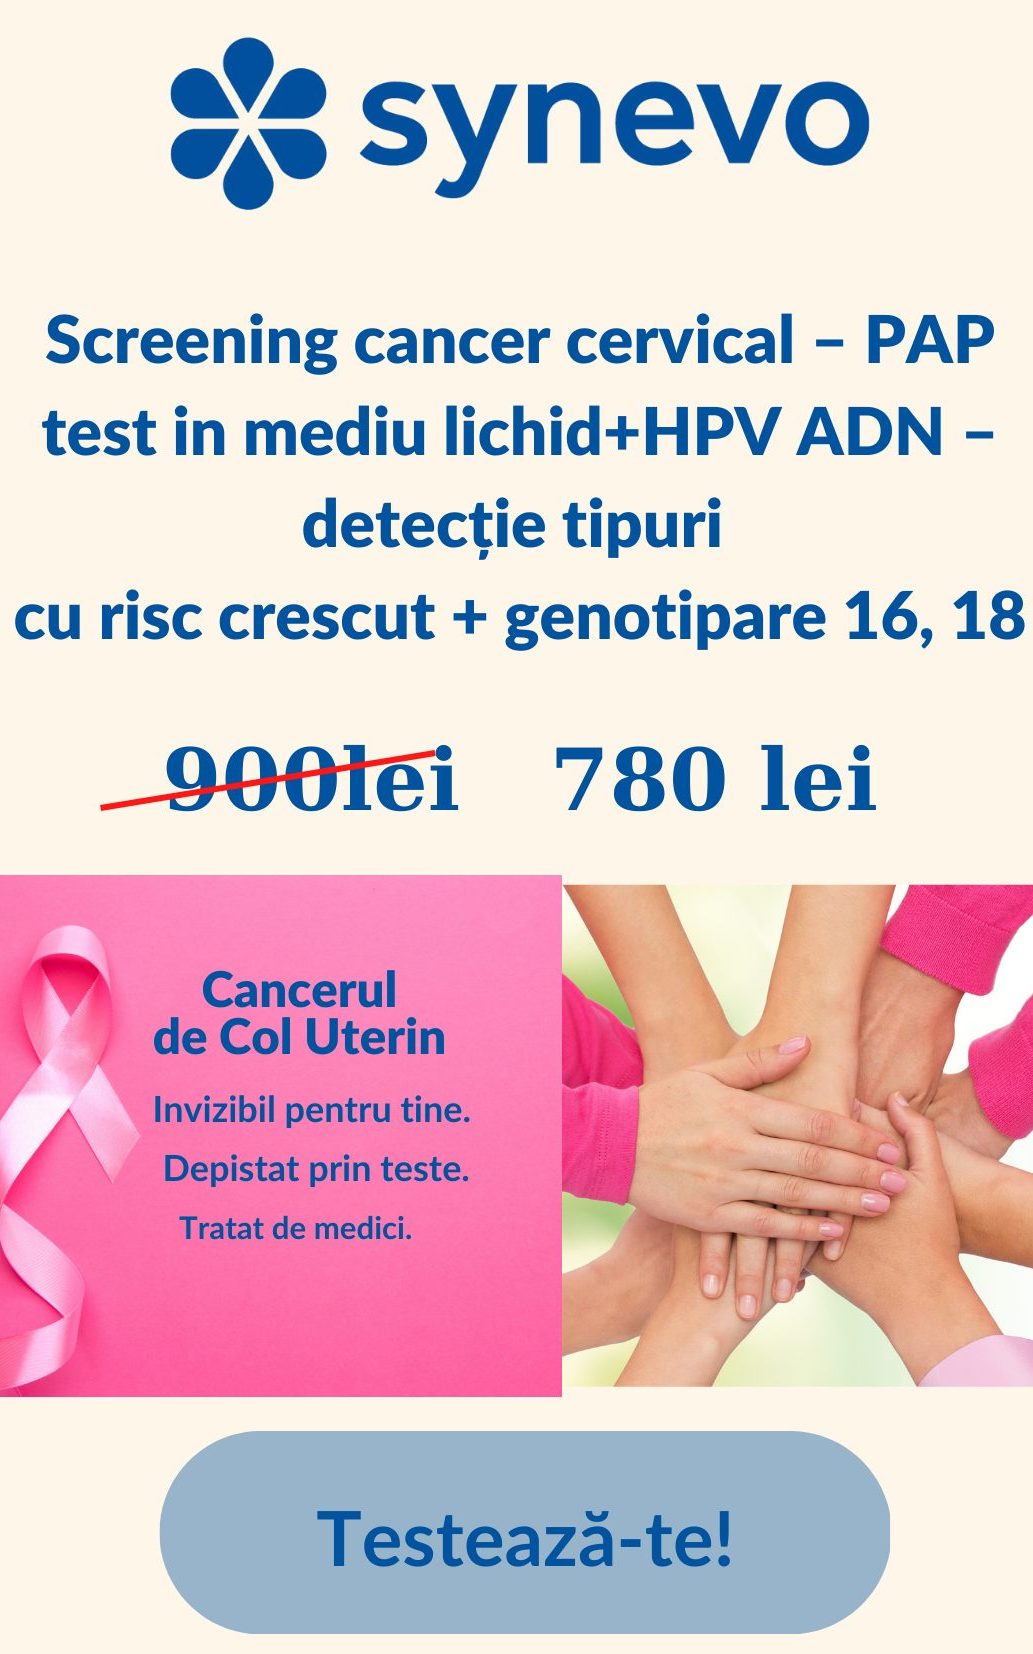 Campanie promoționala: Screening cancer cervical – PAP test in mediu lichid + HPV ADN – detectie tipuri cu risc crescut + genotipare 16, 18 - Synevo